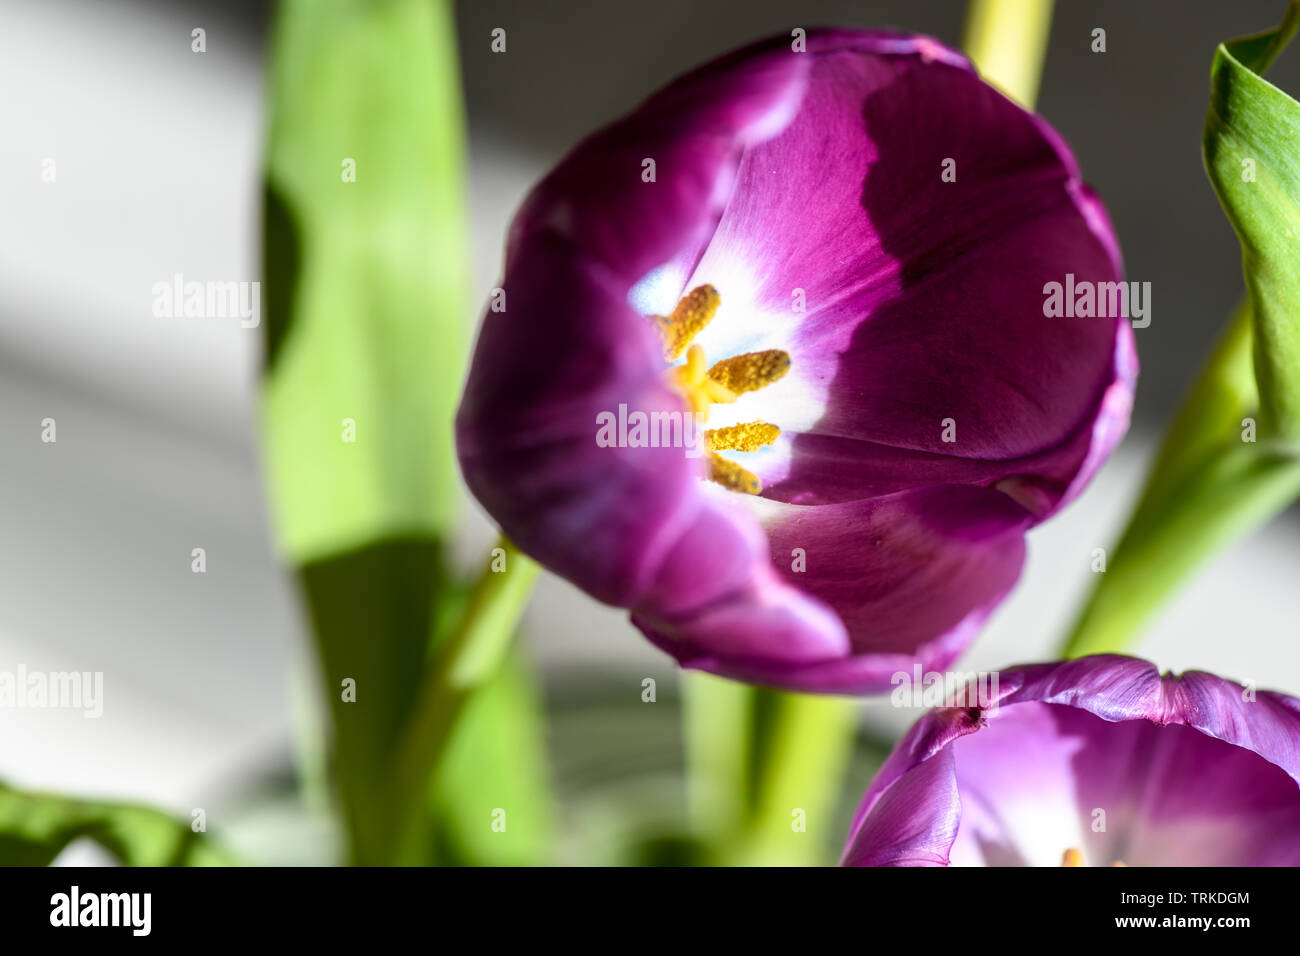 Luminose tulipani viola con steli verdi shot in macro e interni. Ideale rende i fiori per la visualizzazione in ambienti interni. Tulip filamenti in colori brillanti. Foto Stock